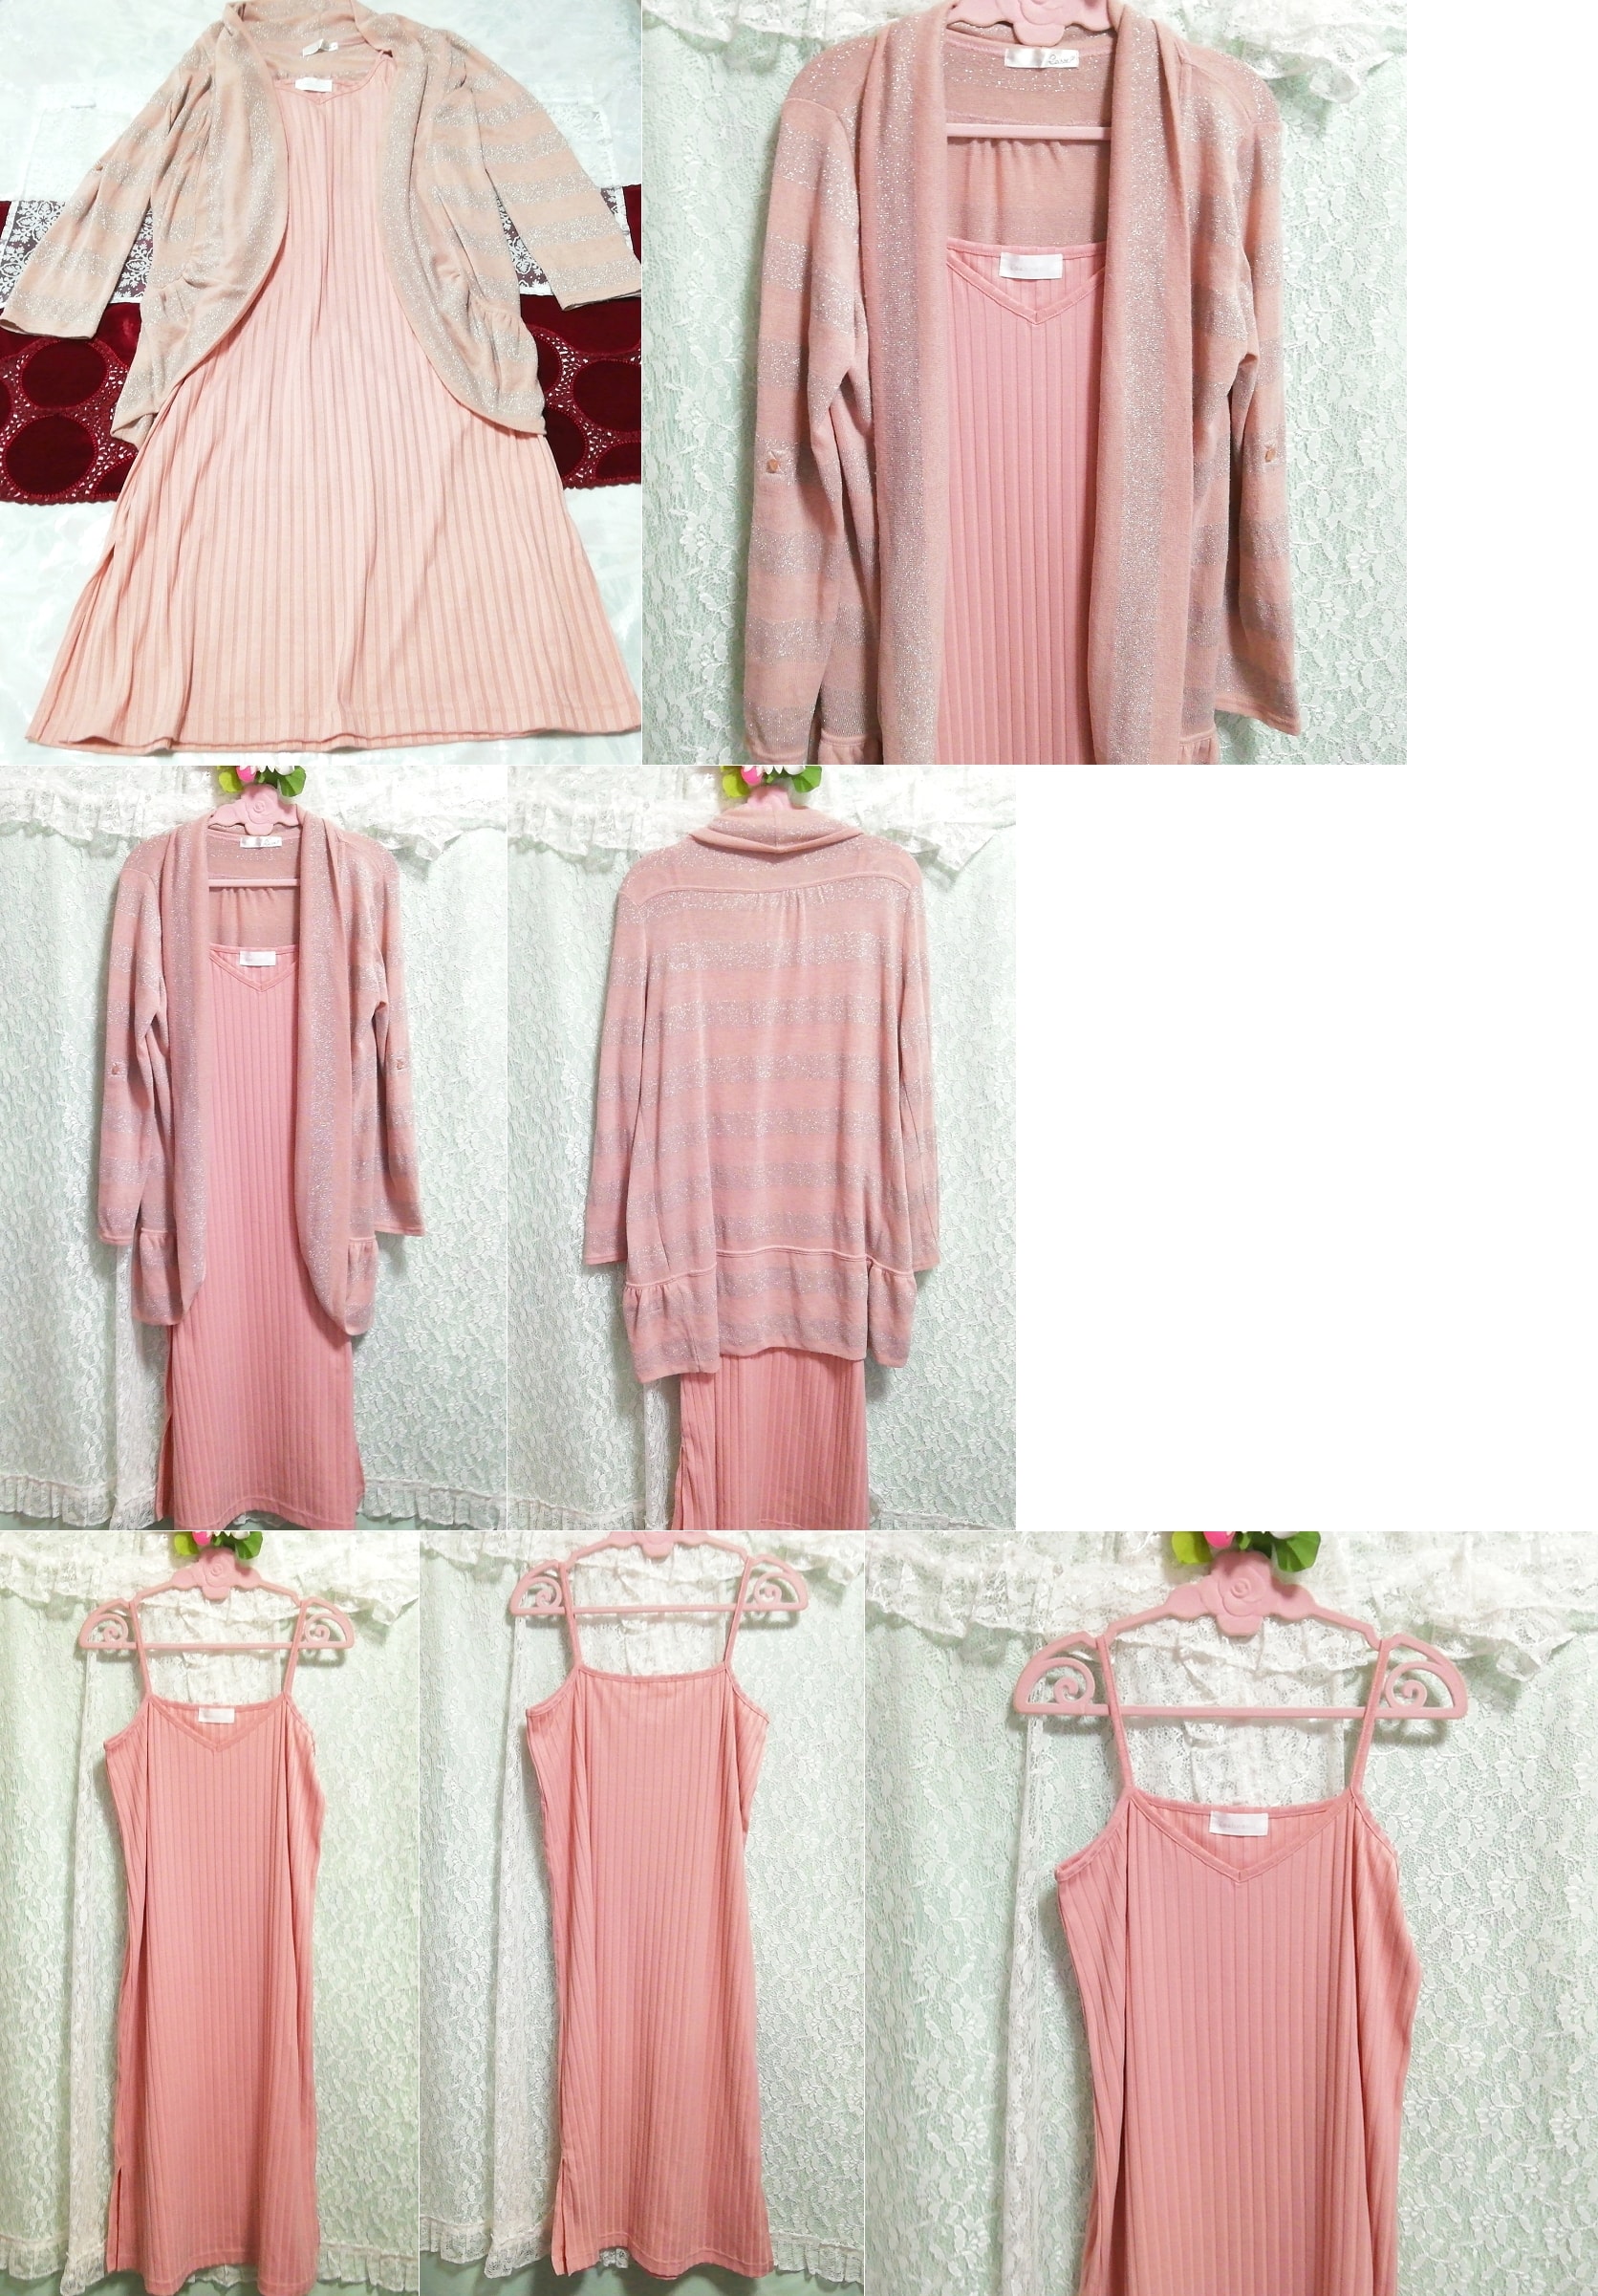 ピンクグレーラメ羽織 ネグリジェ ピンクプリーツキャミソール 2P Pink ash cardigan negligee pink pleated camisole dress, ファッション, レディースファッション, ナイトウエア、パジャマ